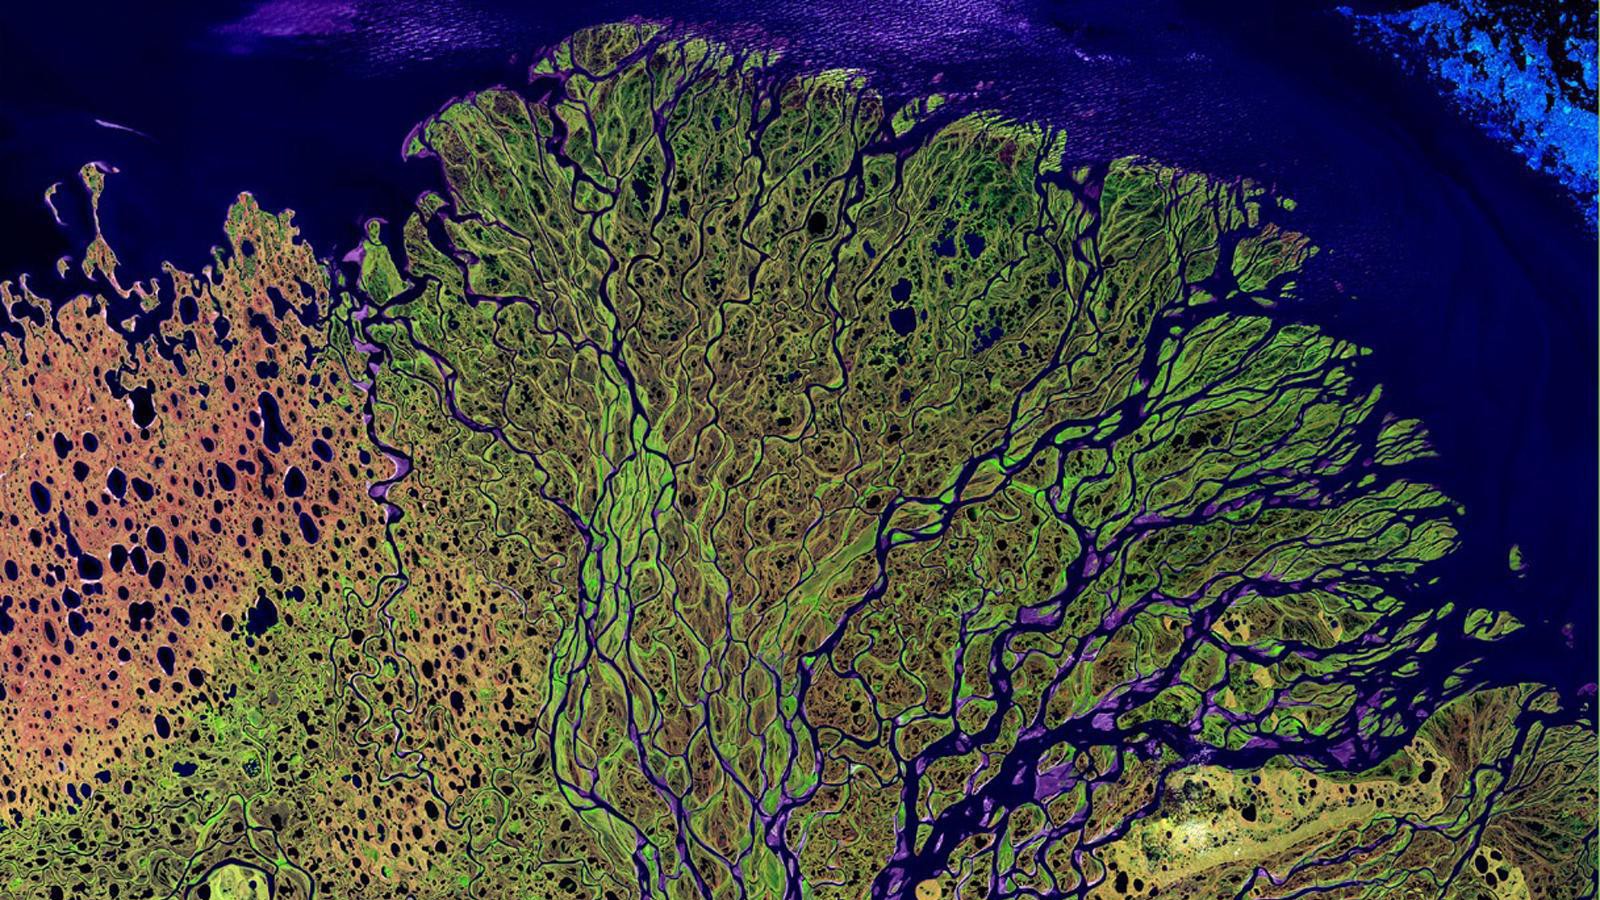 Pourquoi les rivières sont cruciales dans le cycle global du carbone